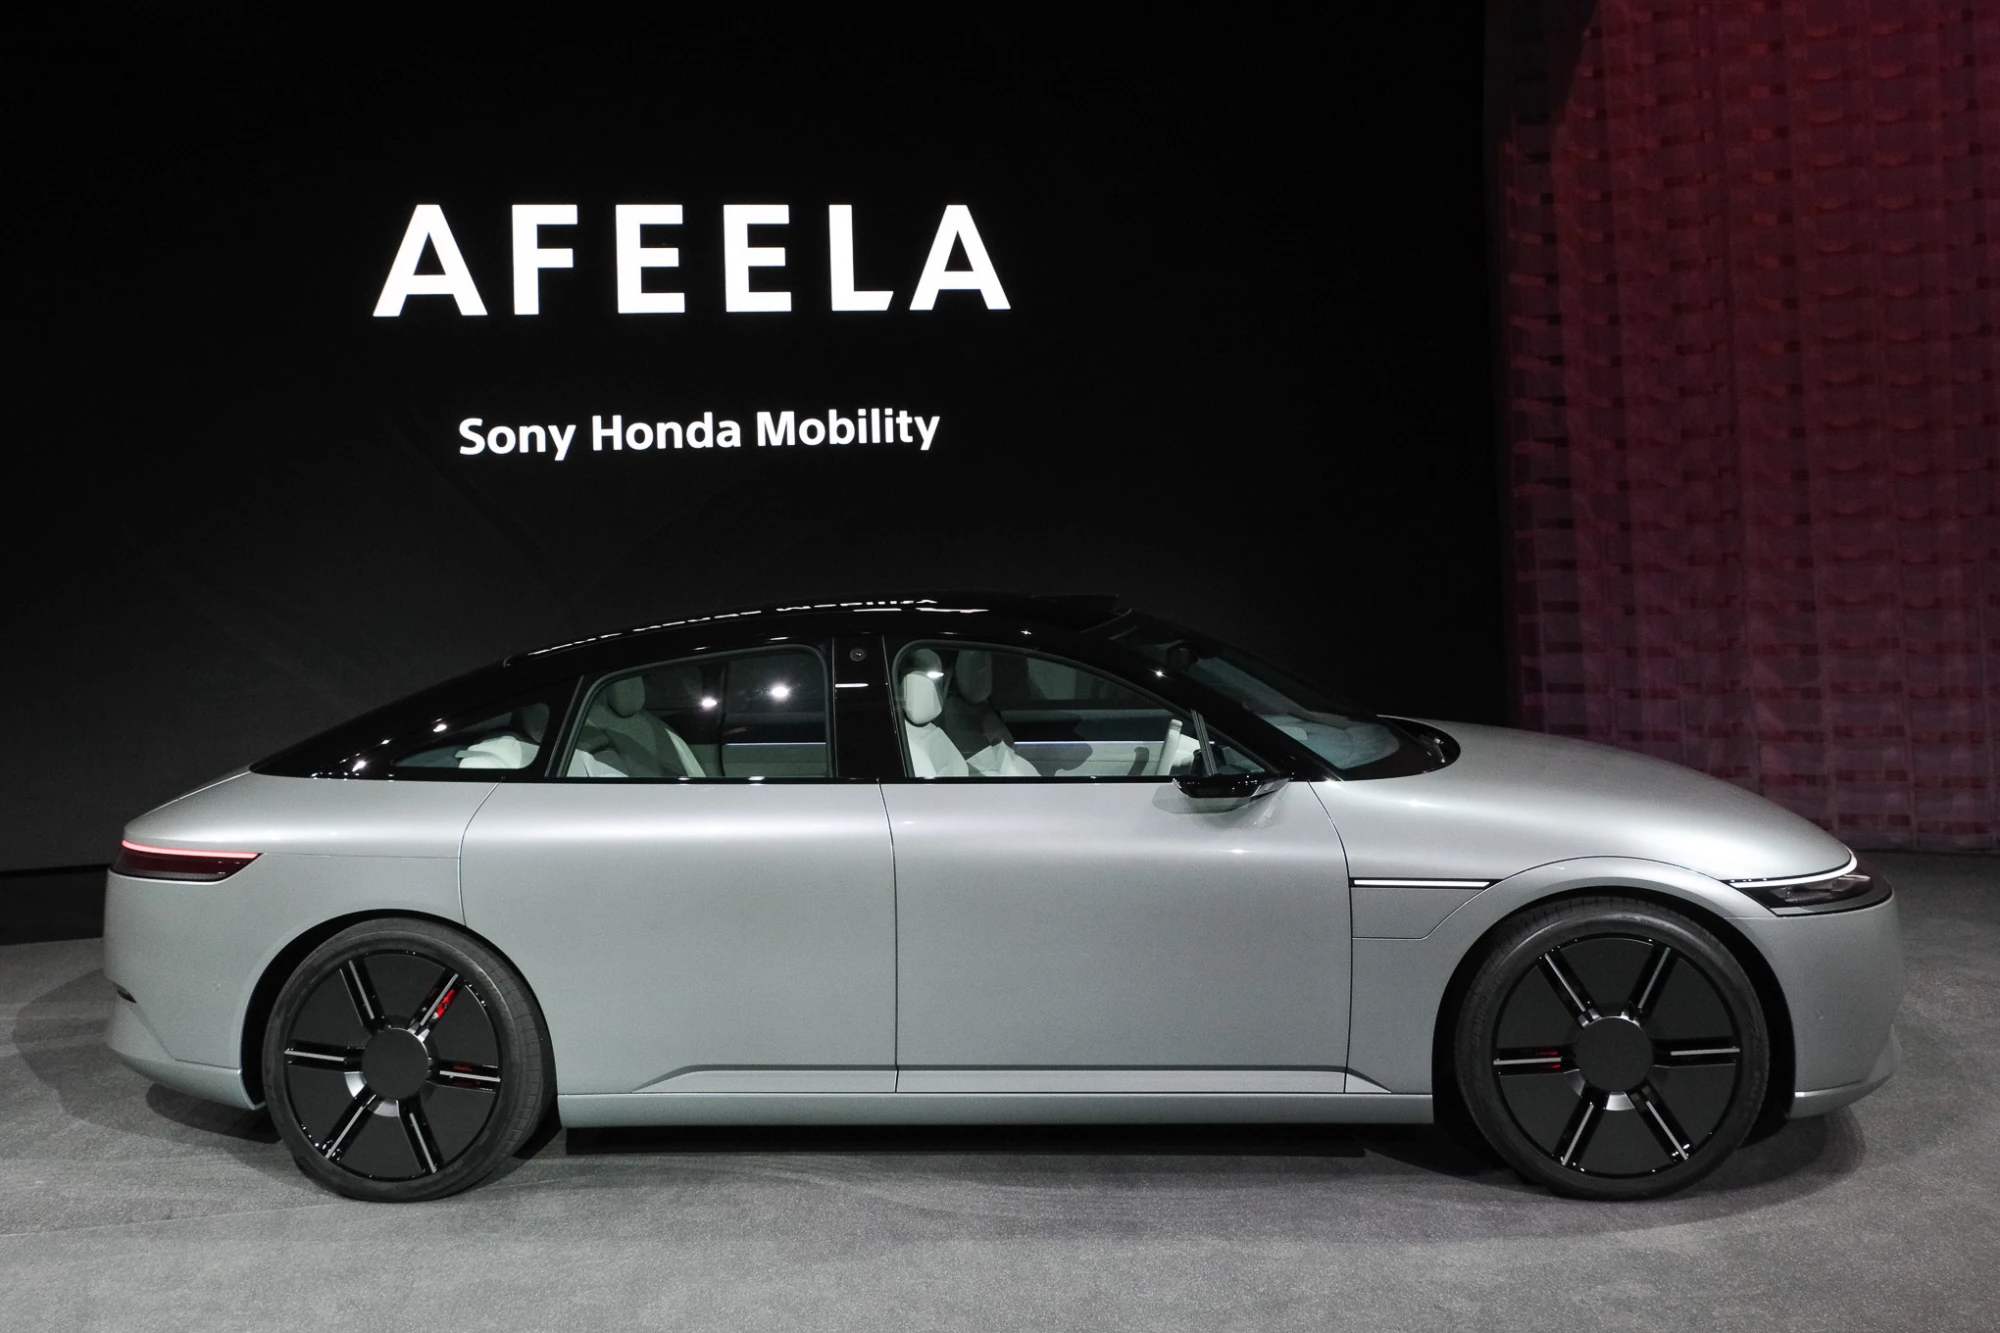 Sony ha mostrato un prototipo dell'auto Afeela, che apparirà nel 2026